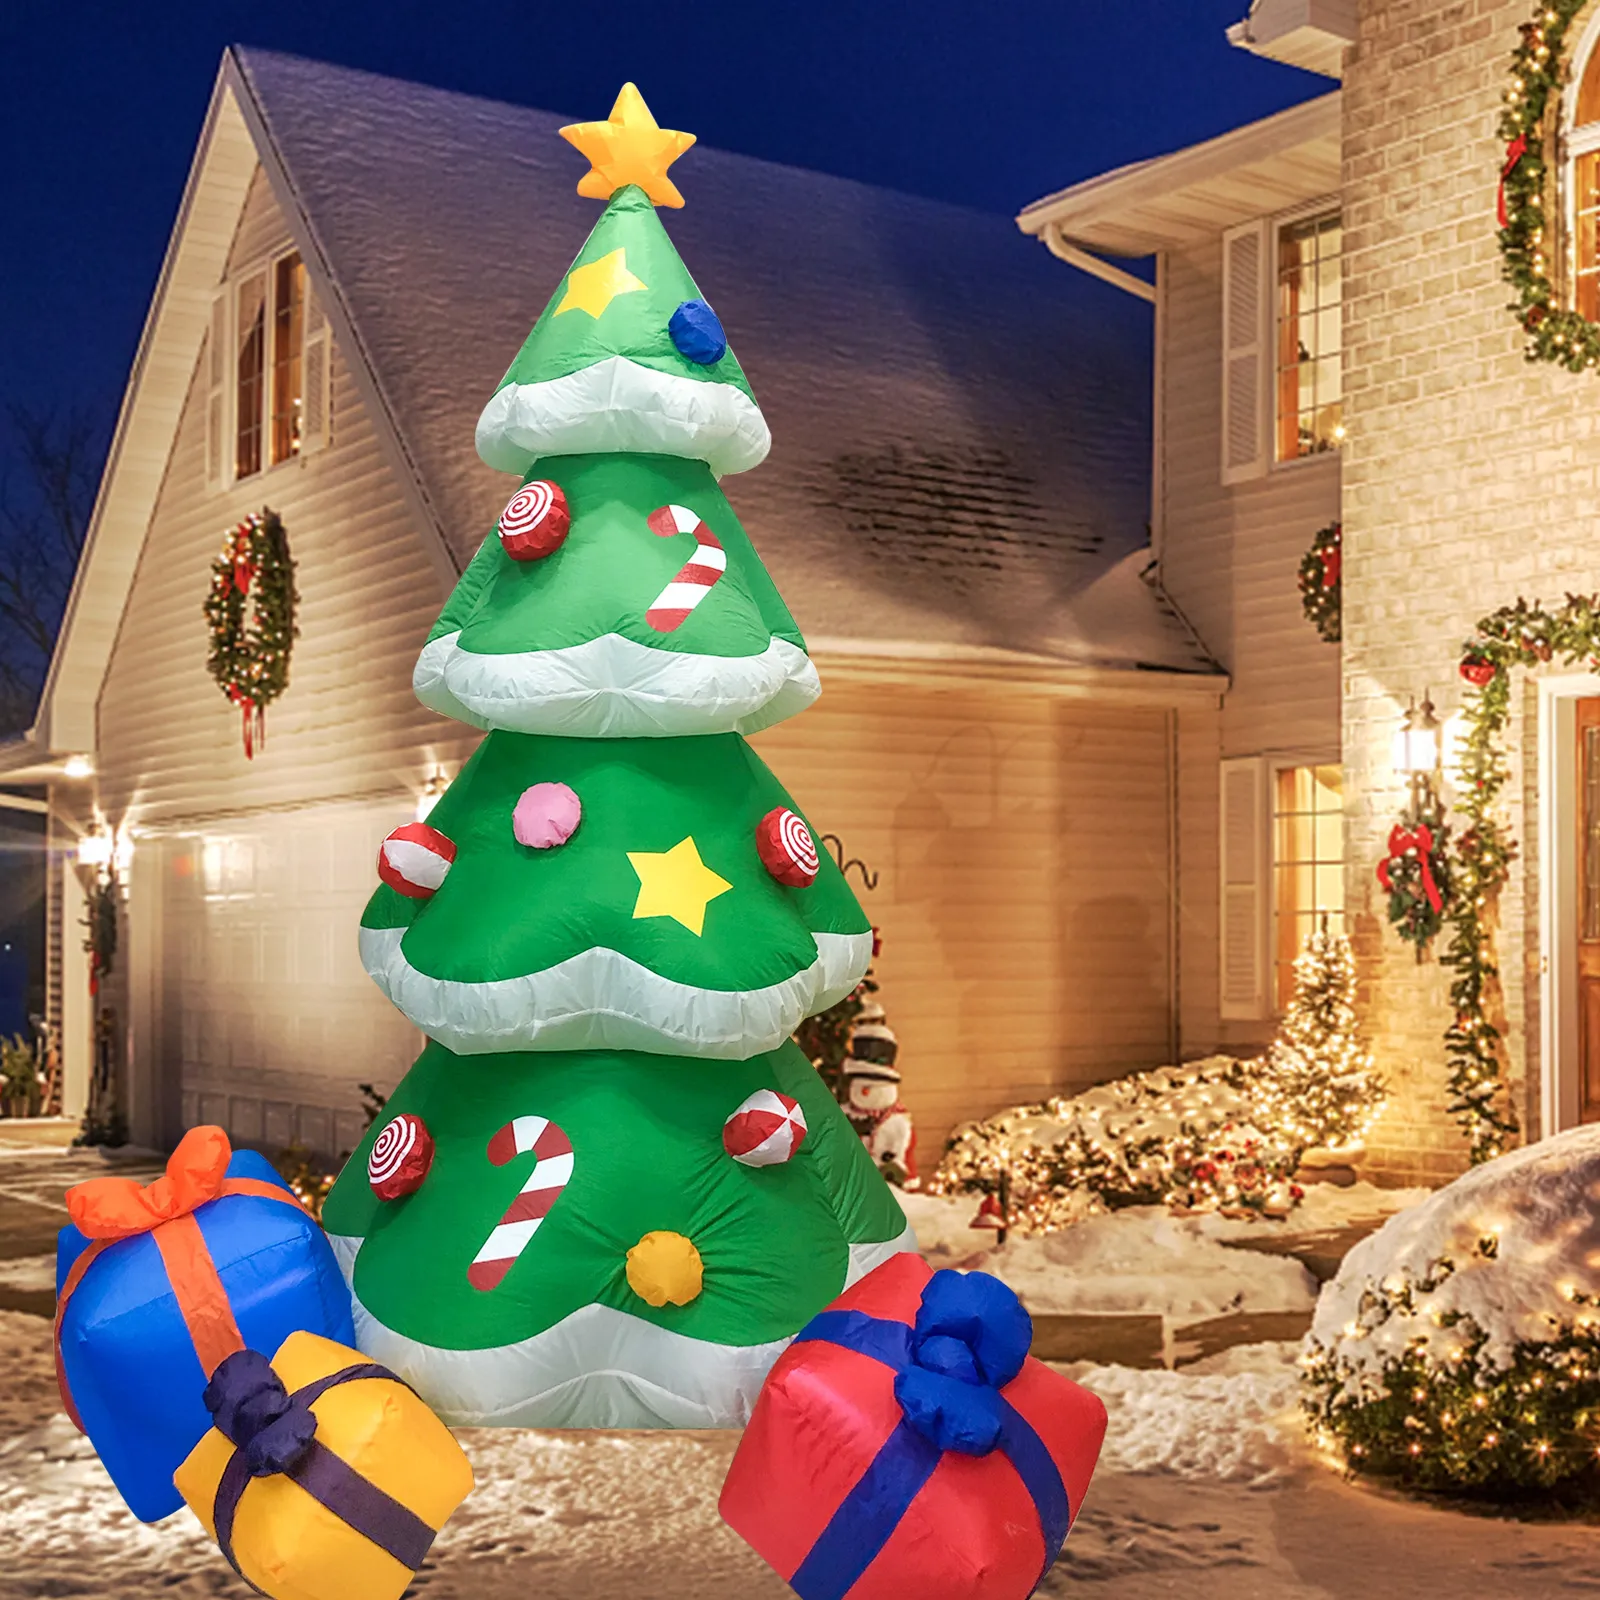 2 1m arbre de Noël jardin décoration extérieure éclairage RVB gonflable arbres de Noël gonflables modèle festival lumière accessoires bonbons cane271B